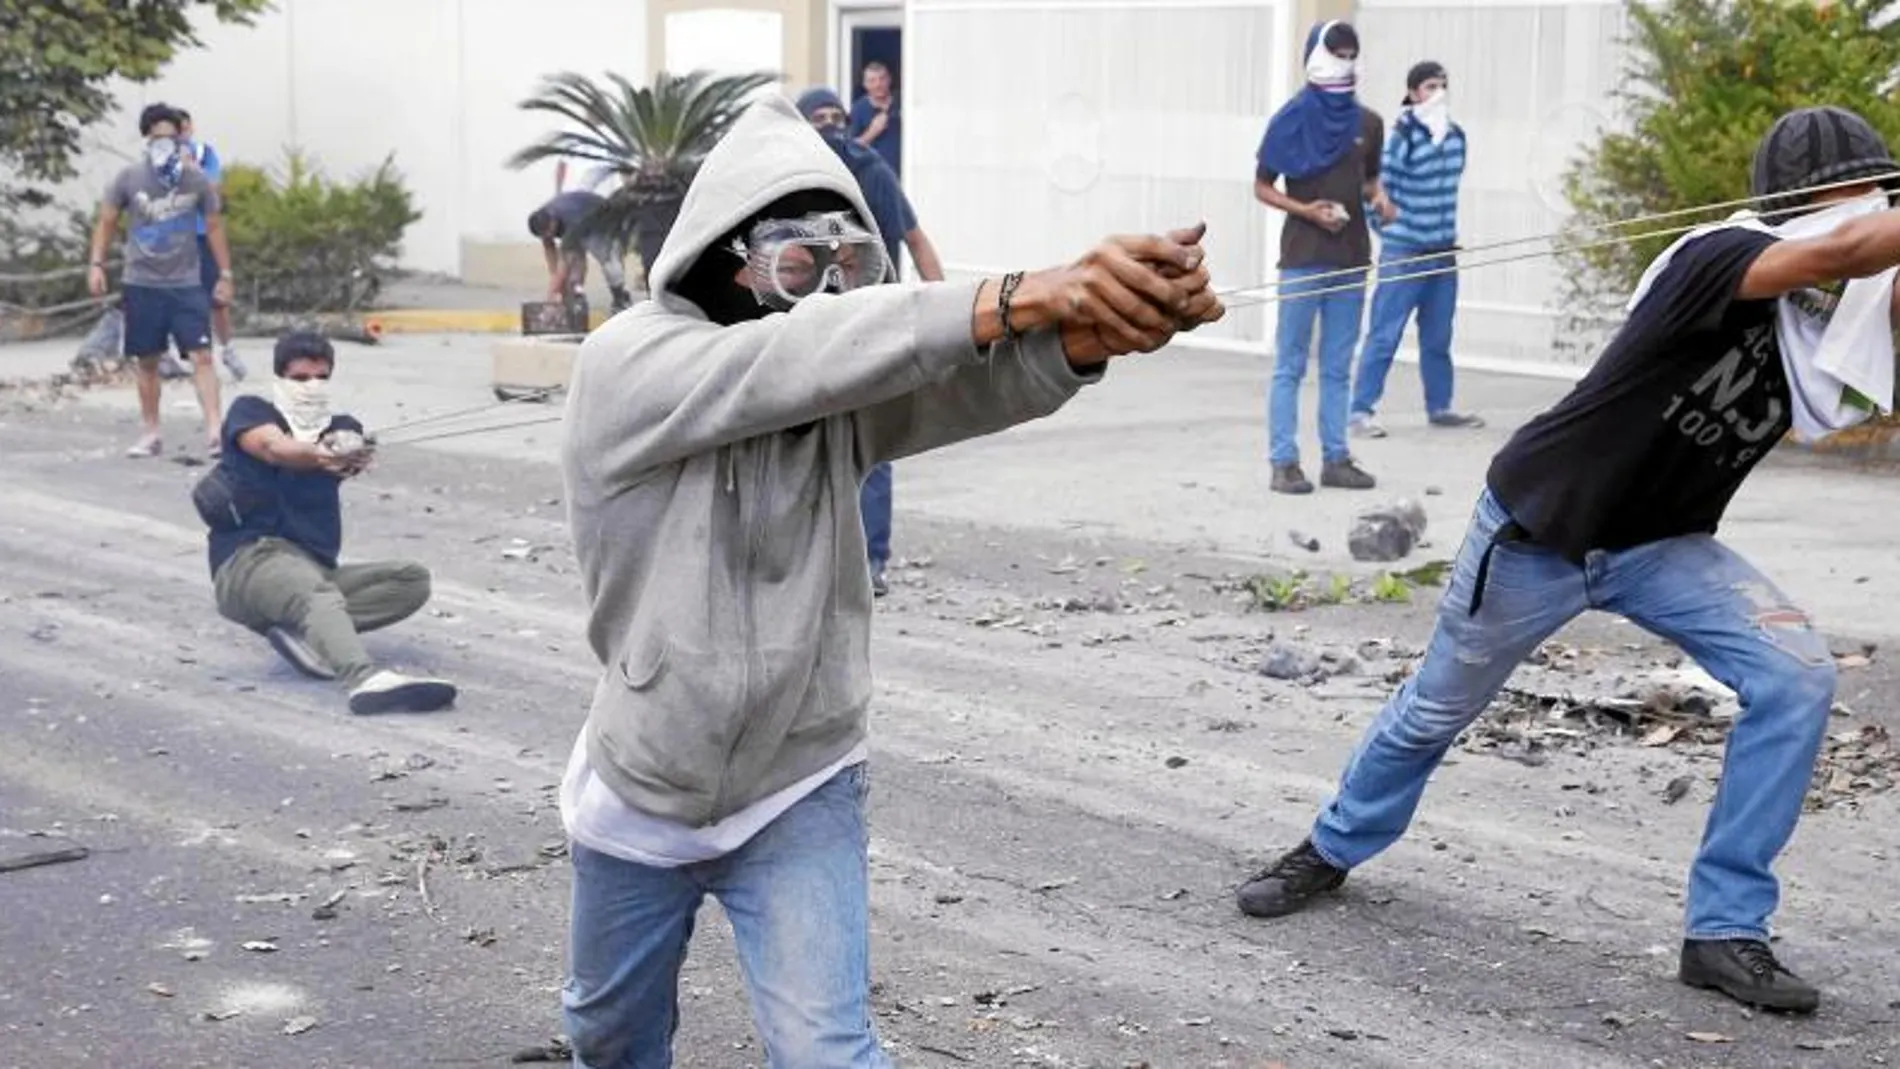 Un grupo de estudiantes se enfrenta, ayer, con piedras a la Policía durante una protesta en San Cristóbal